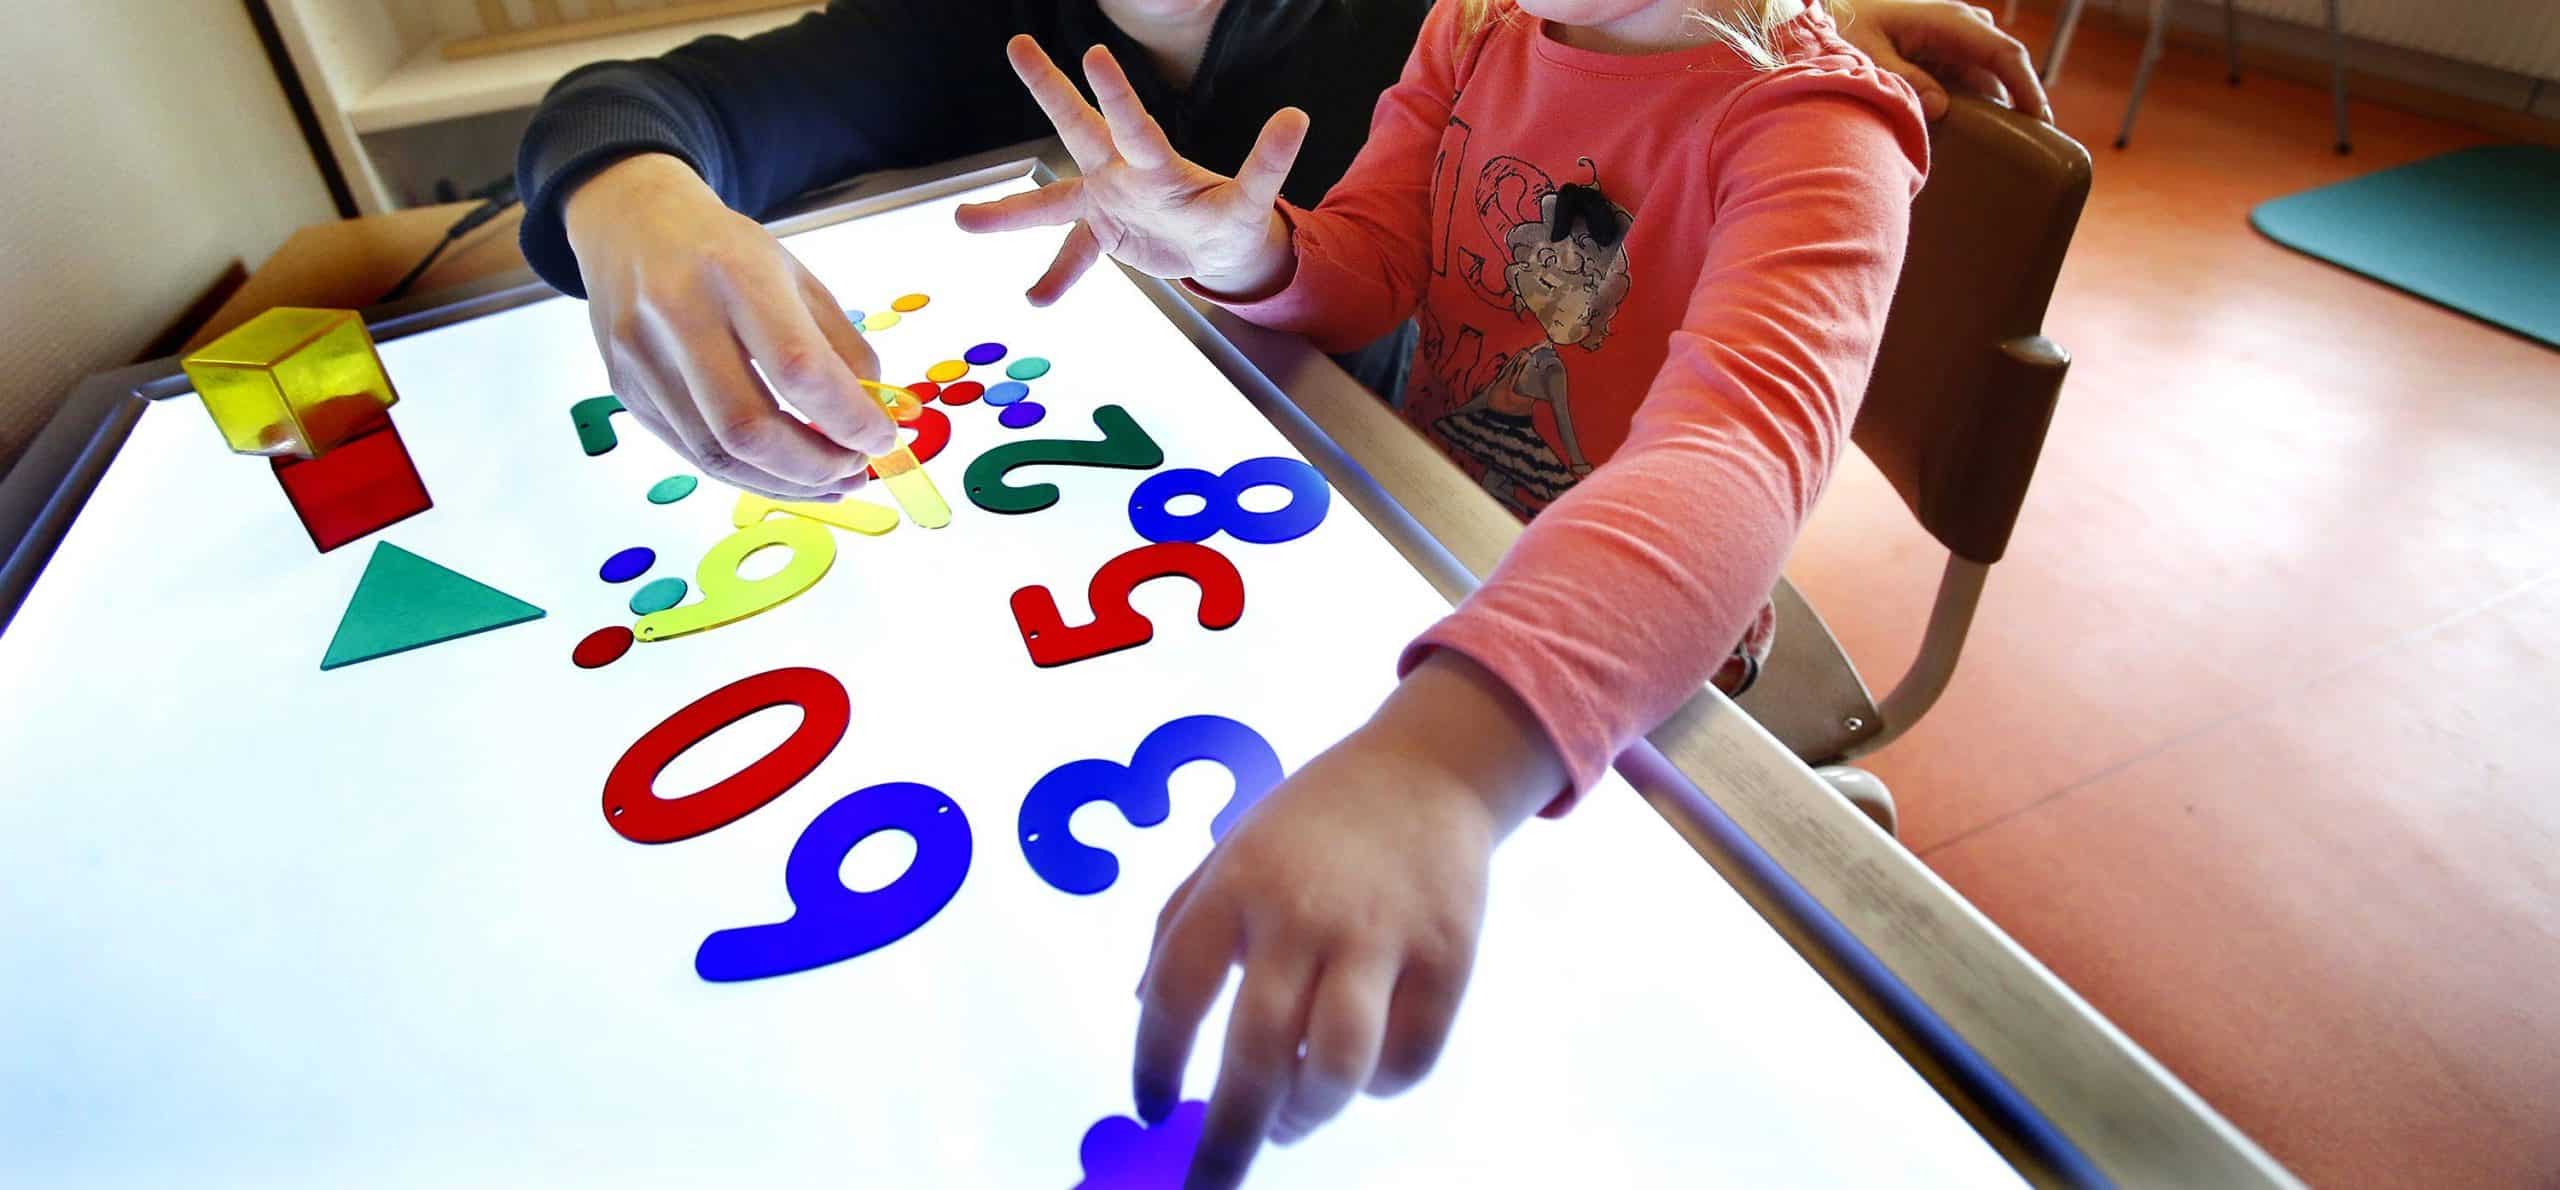 Förskolebarn leker med siffror i olika färger på ett ljusbord.